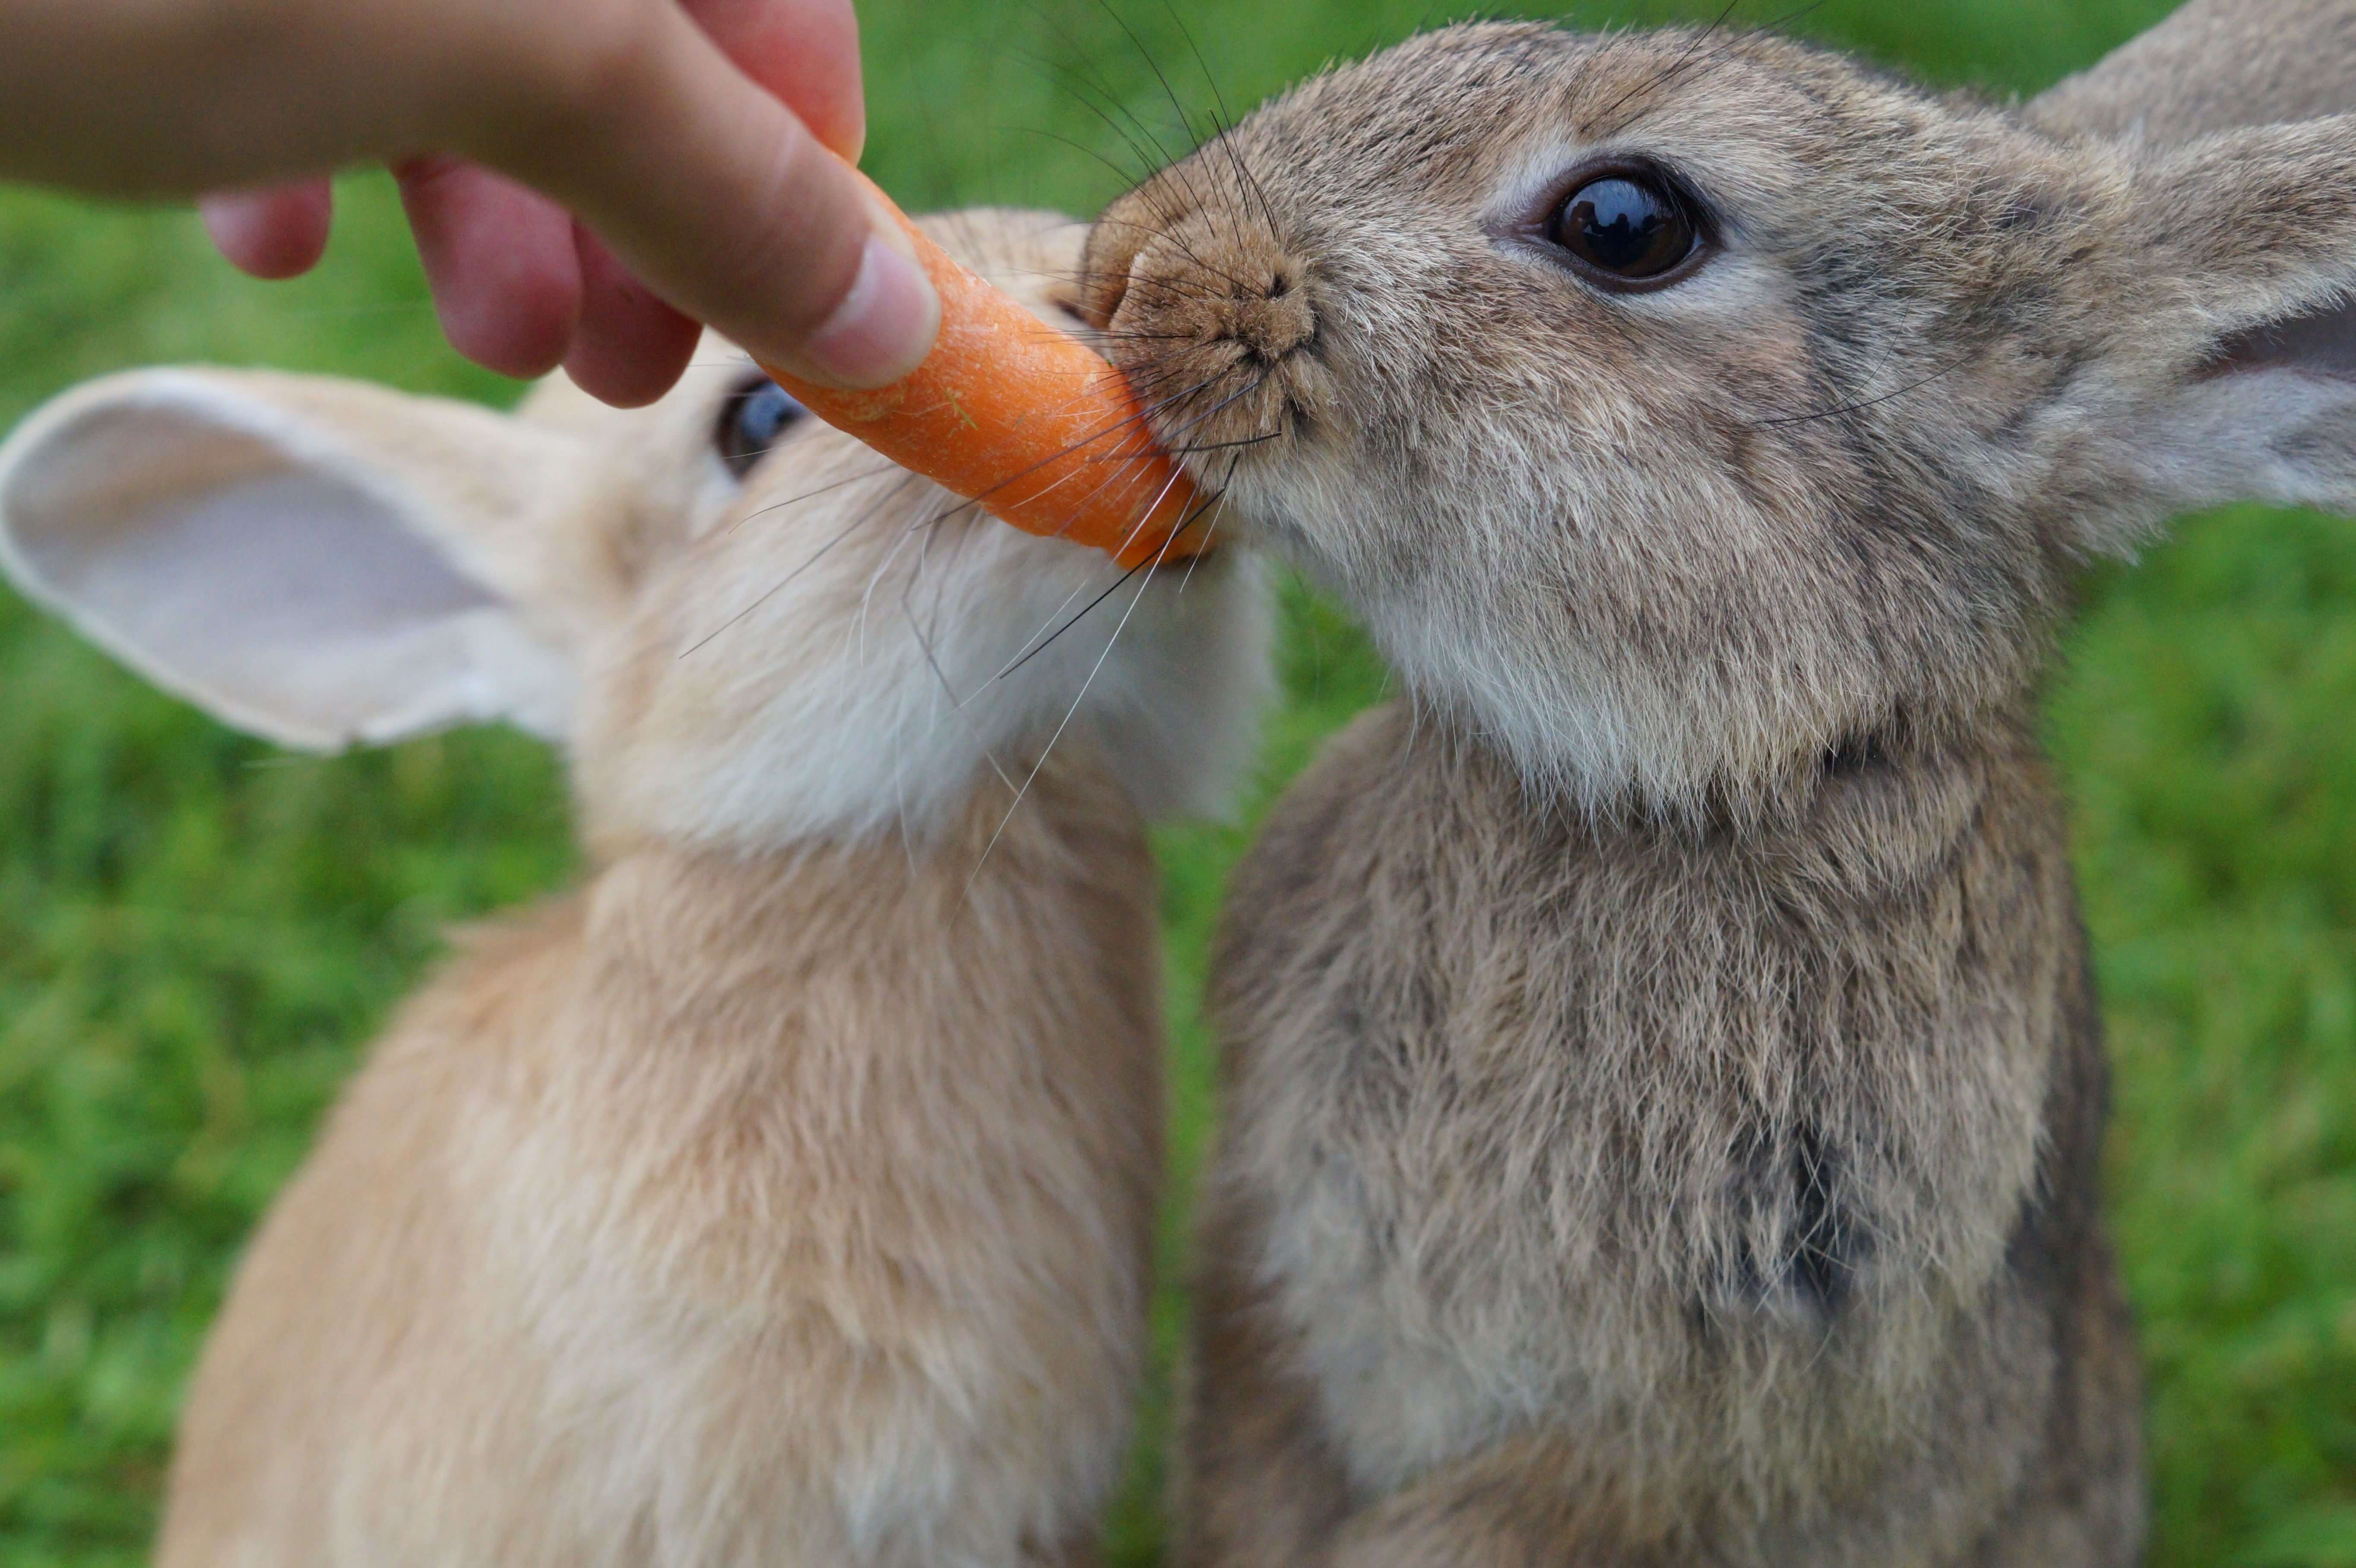 可將點心及青菜水果作為給予兔子的獎勵